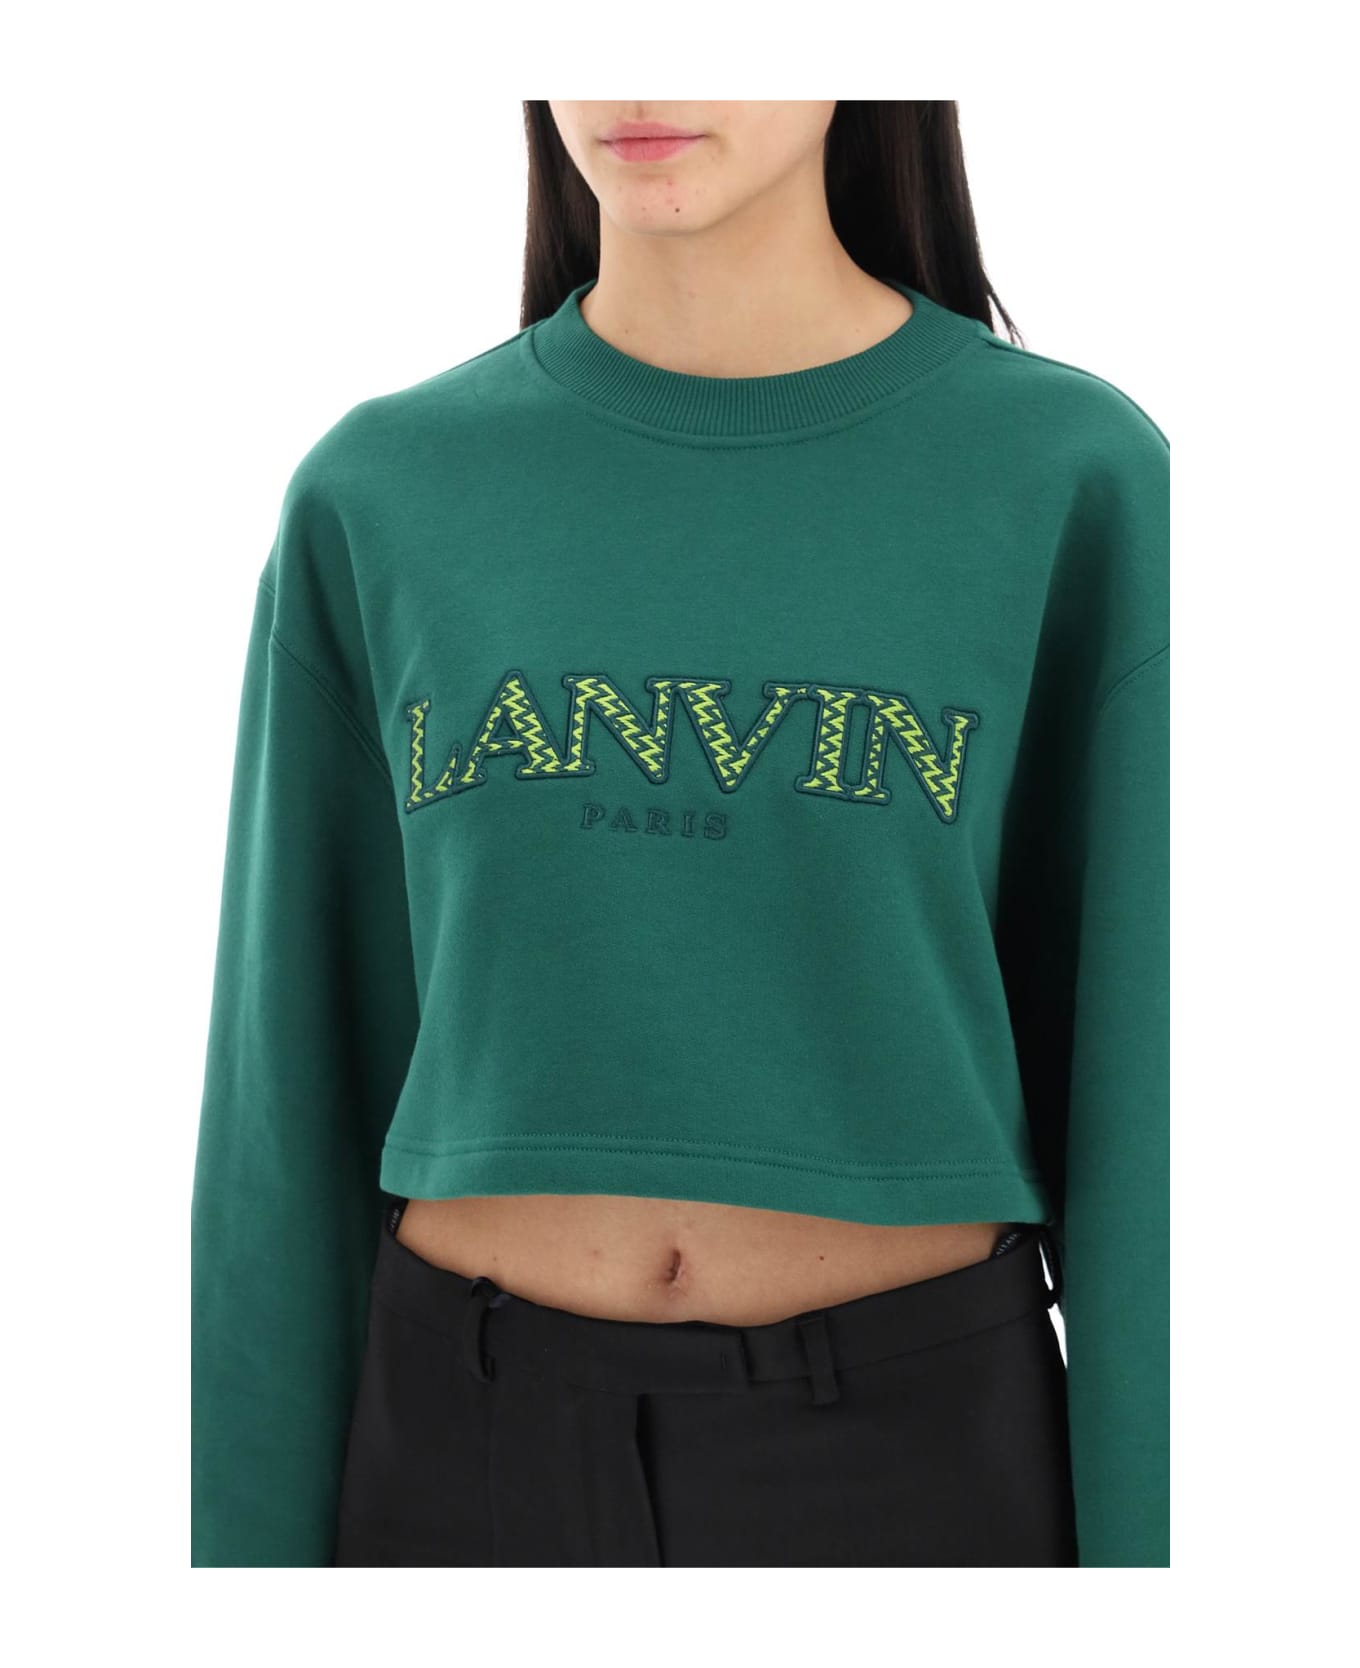 Lanvin Fleece - BOTTLE (Green)